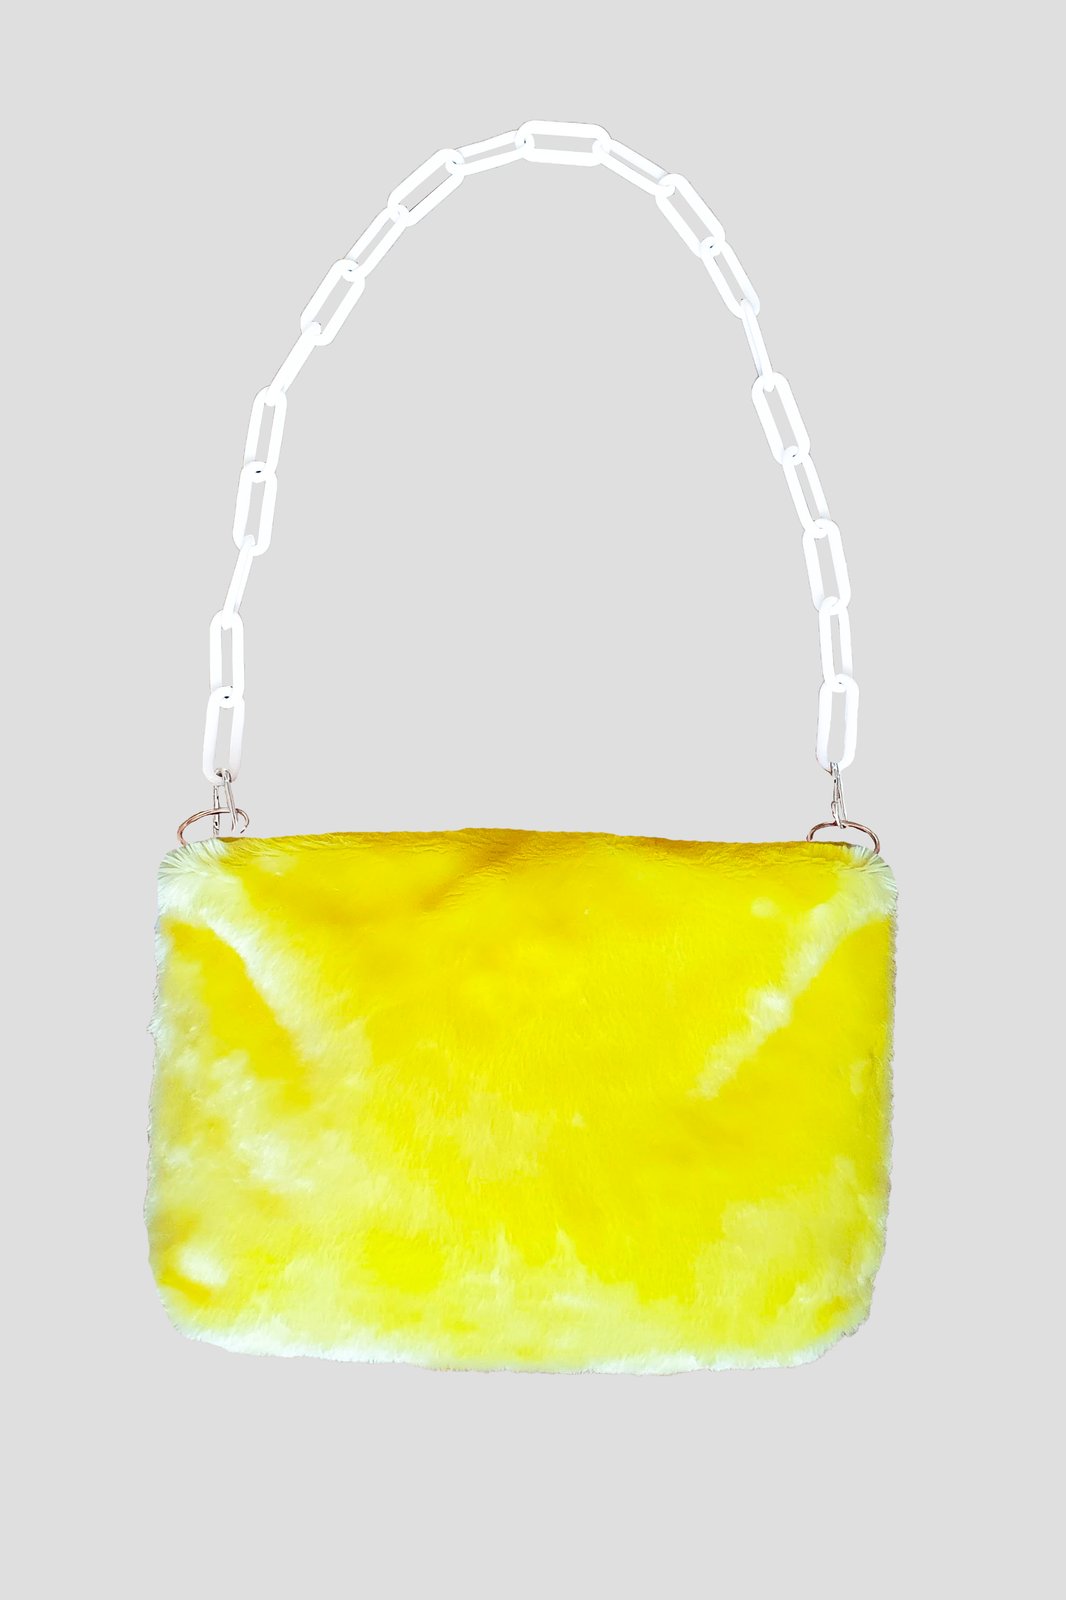 Buy accomade Women Yellow Handbag Red Online @ Best Price in India |  Flipkart.com